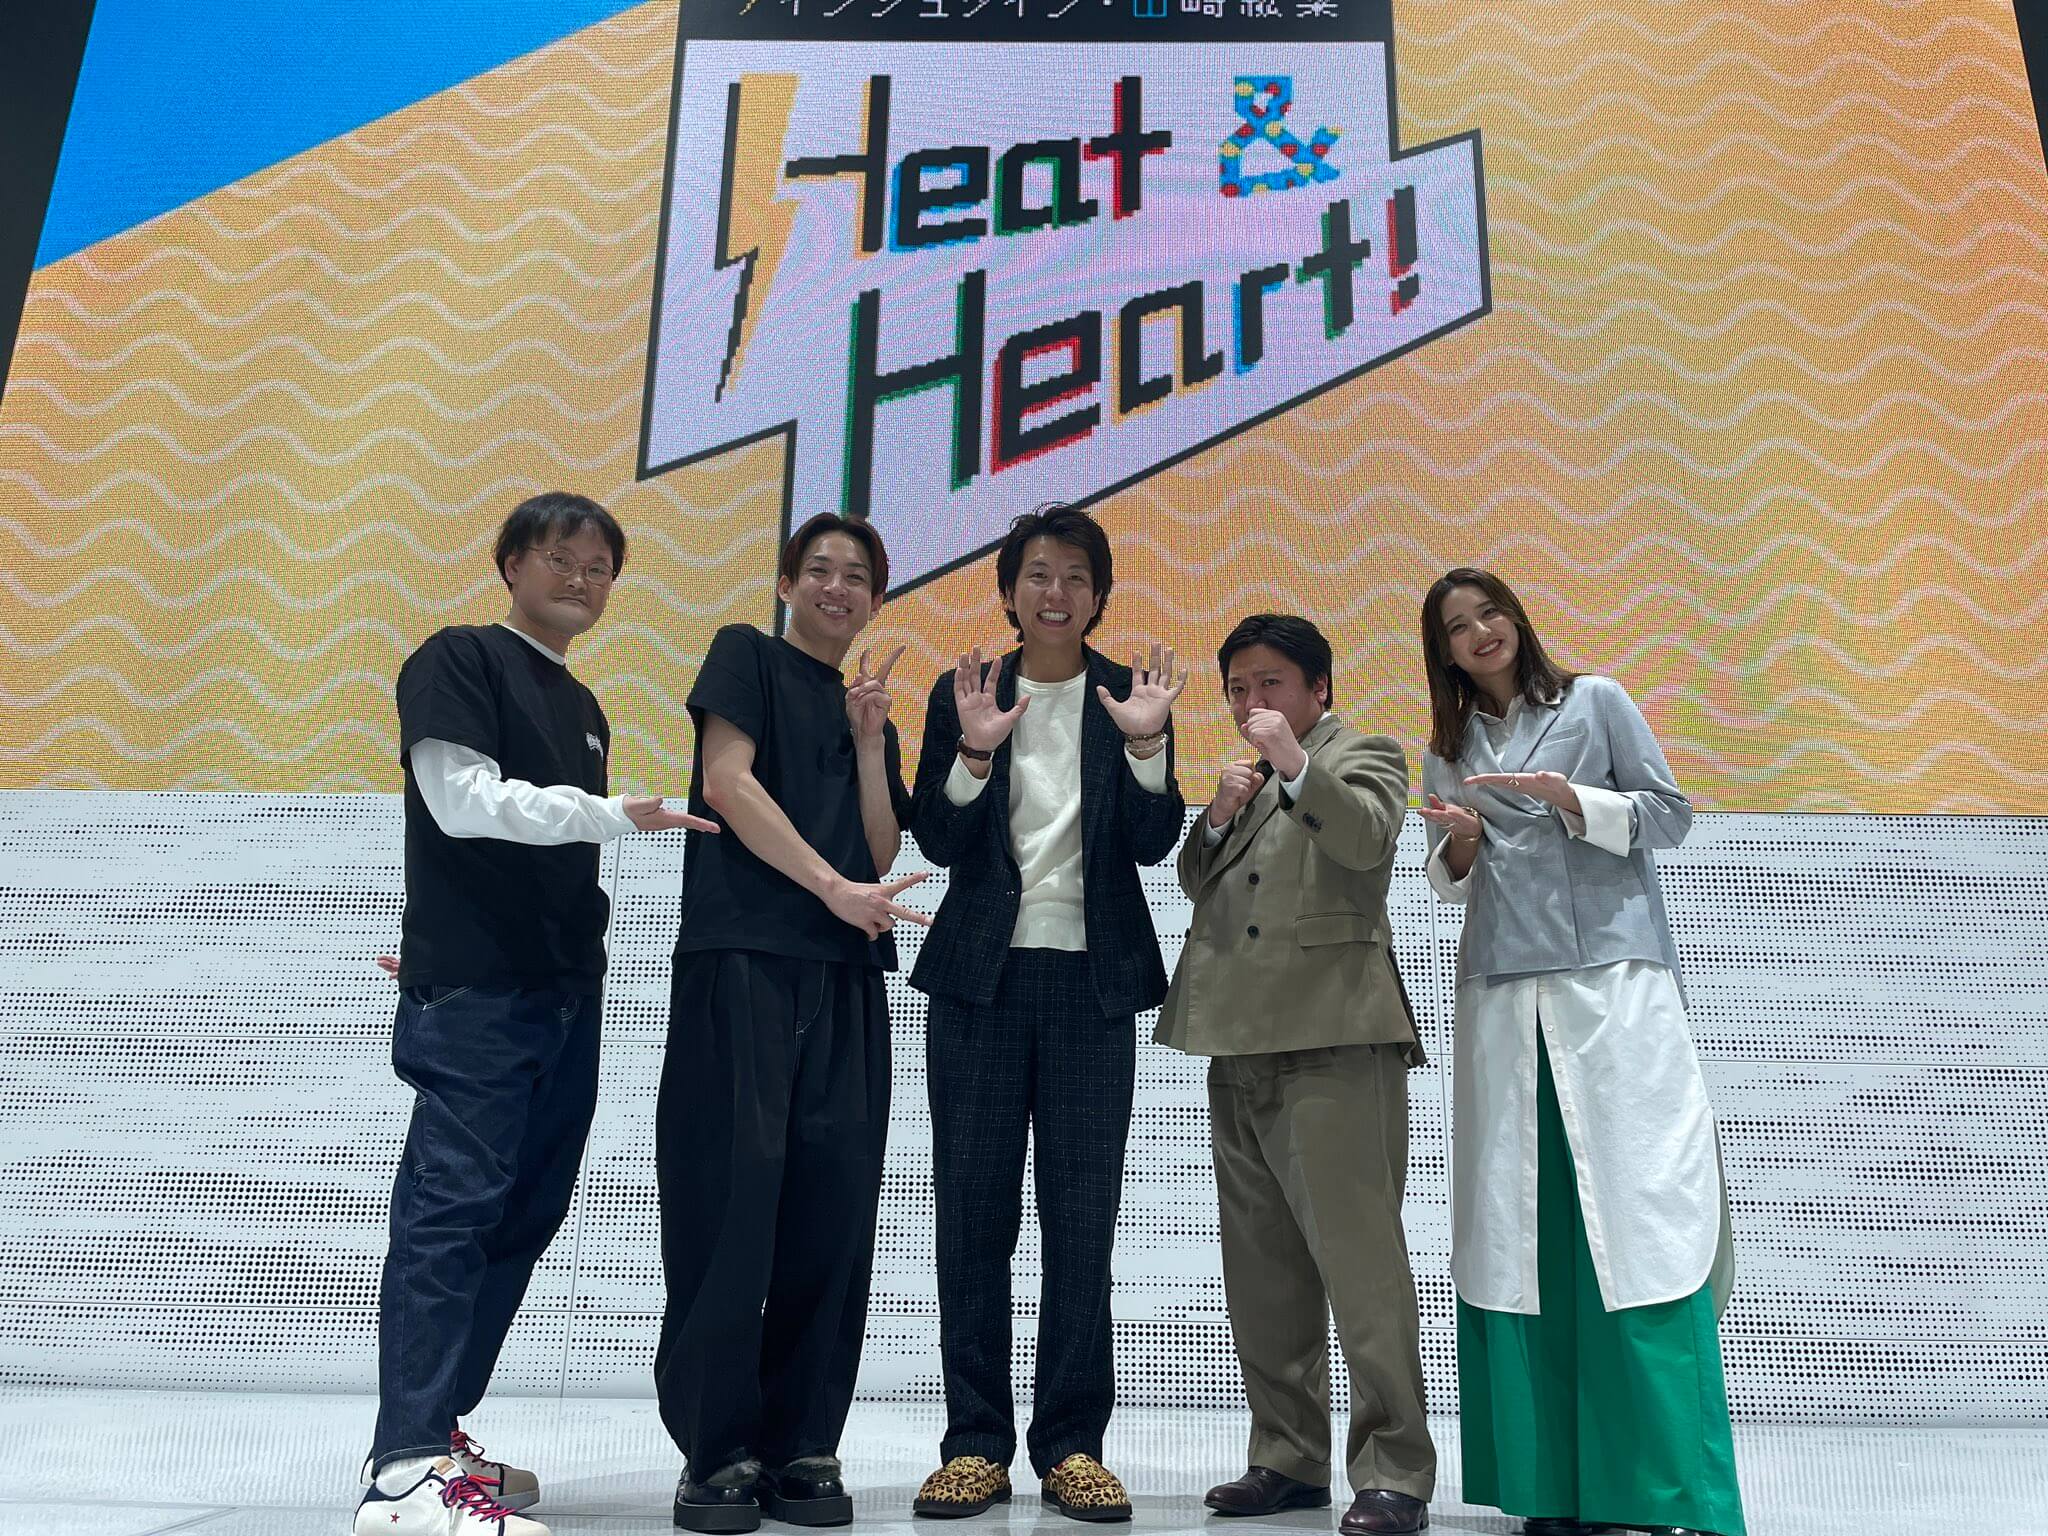 8回目の公開録音イベントありがとうございました！ゲストはお笑い芸人・ニッポンの社長のおふたりでした♪『アインシュタイン・山崎紘菜 Heat & Heart!』